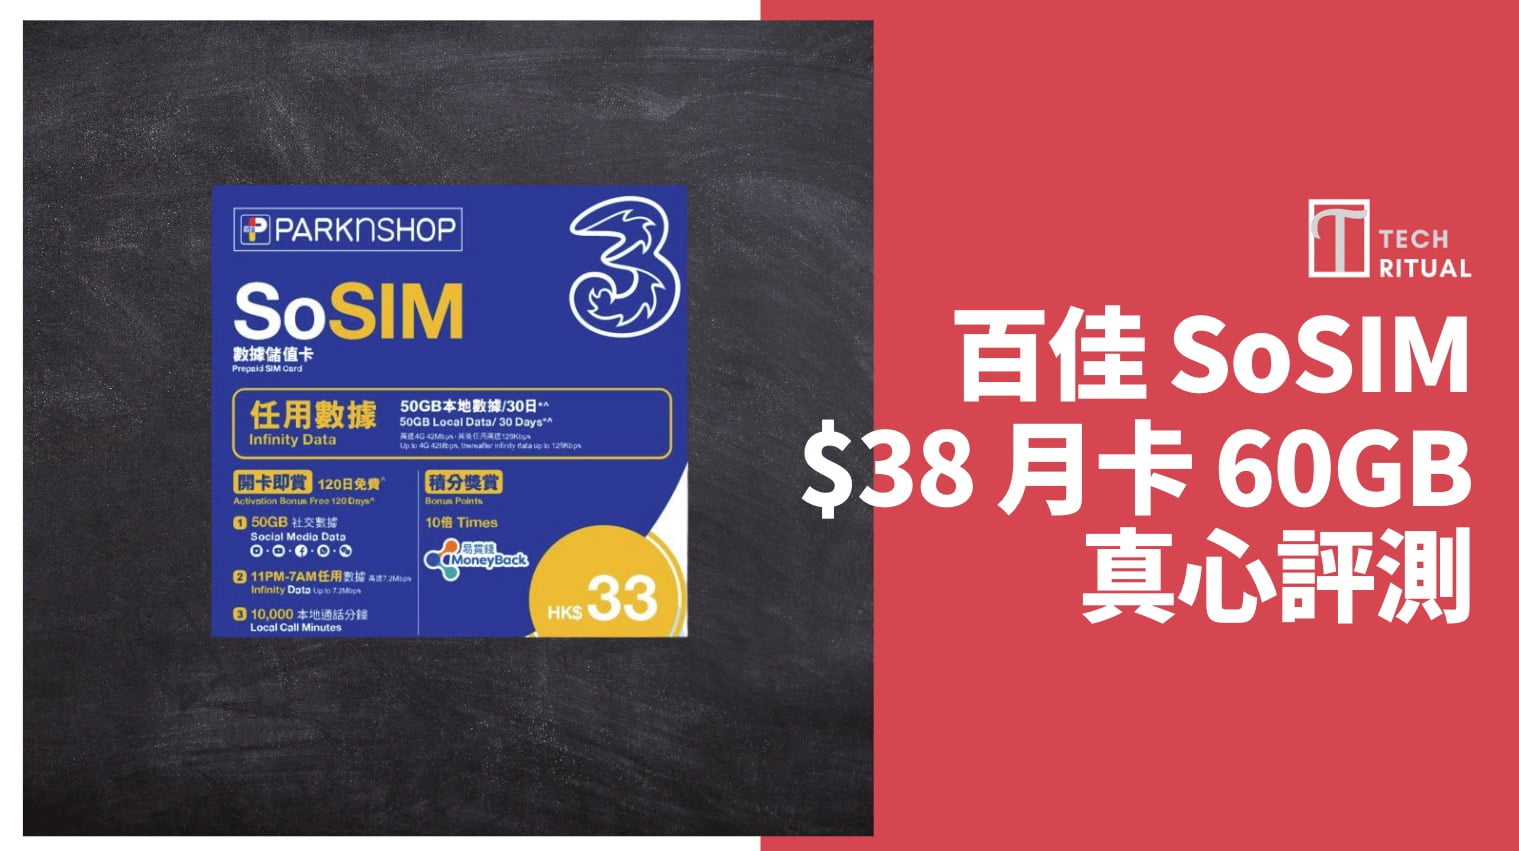 【評測/解說】百佳 SoSIM  有 60GB 電話月卡，變無限數據優惠玩法 & 實名登記教學